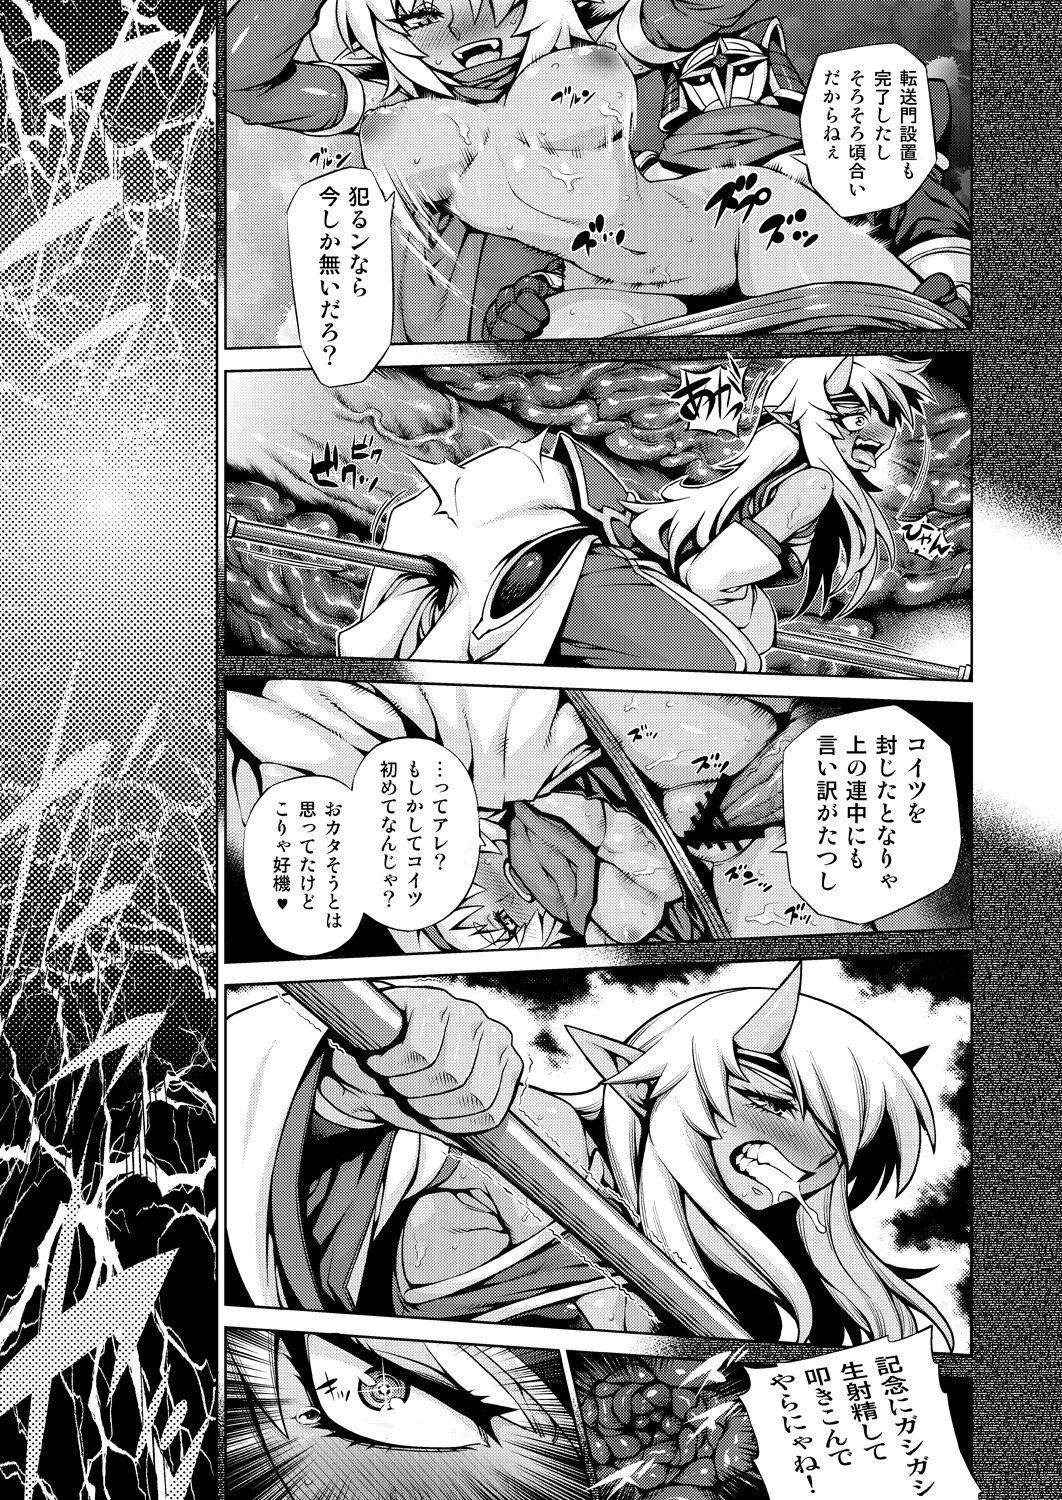 Caught Magatchan no jigen chōyaku dai sakusen purasu - Shinrabansho Scandal - Page 10